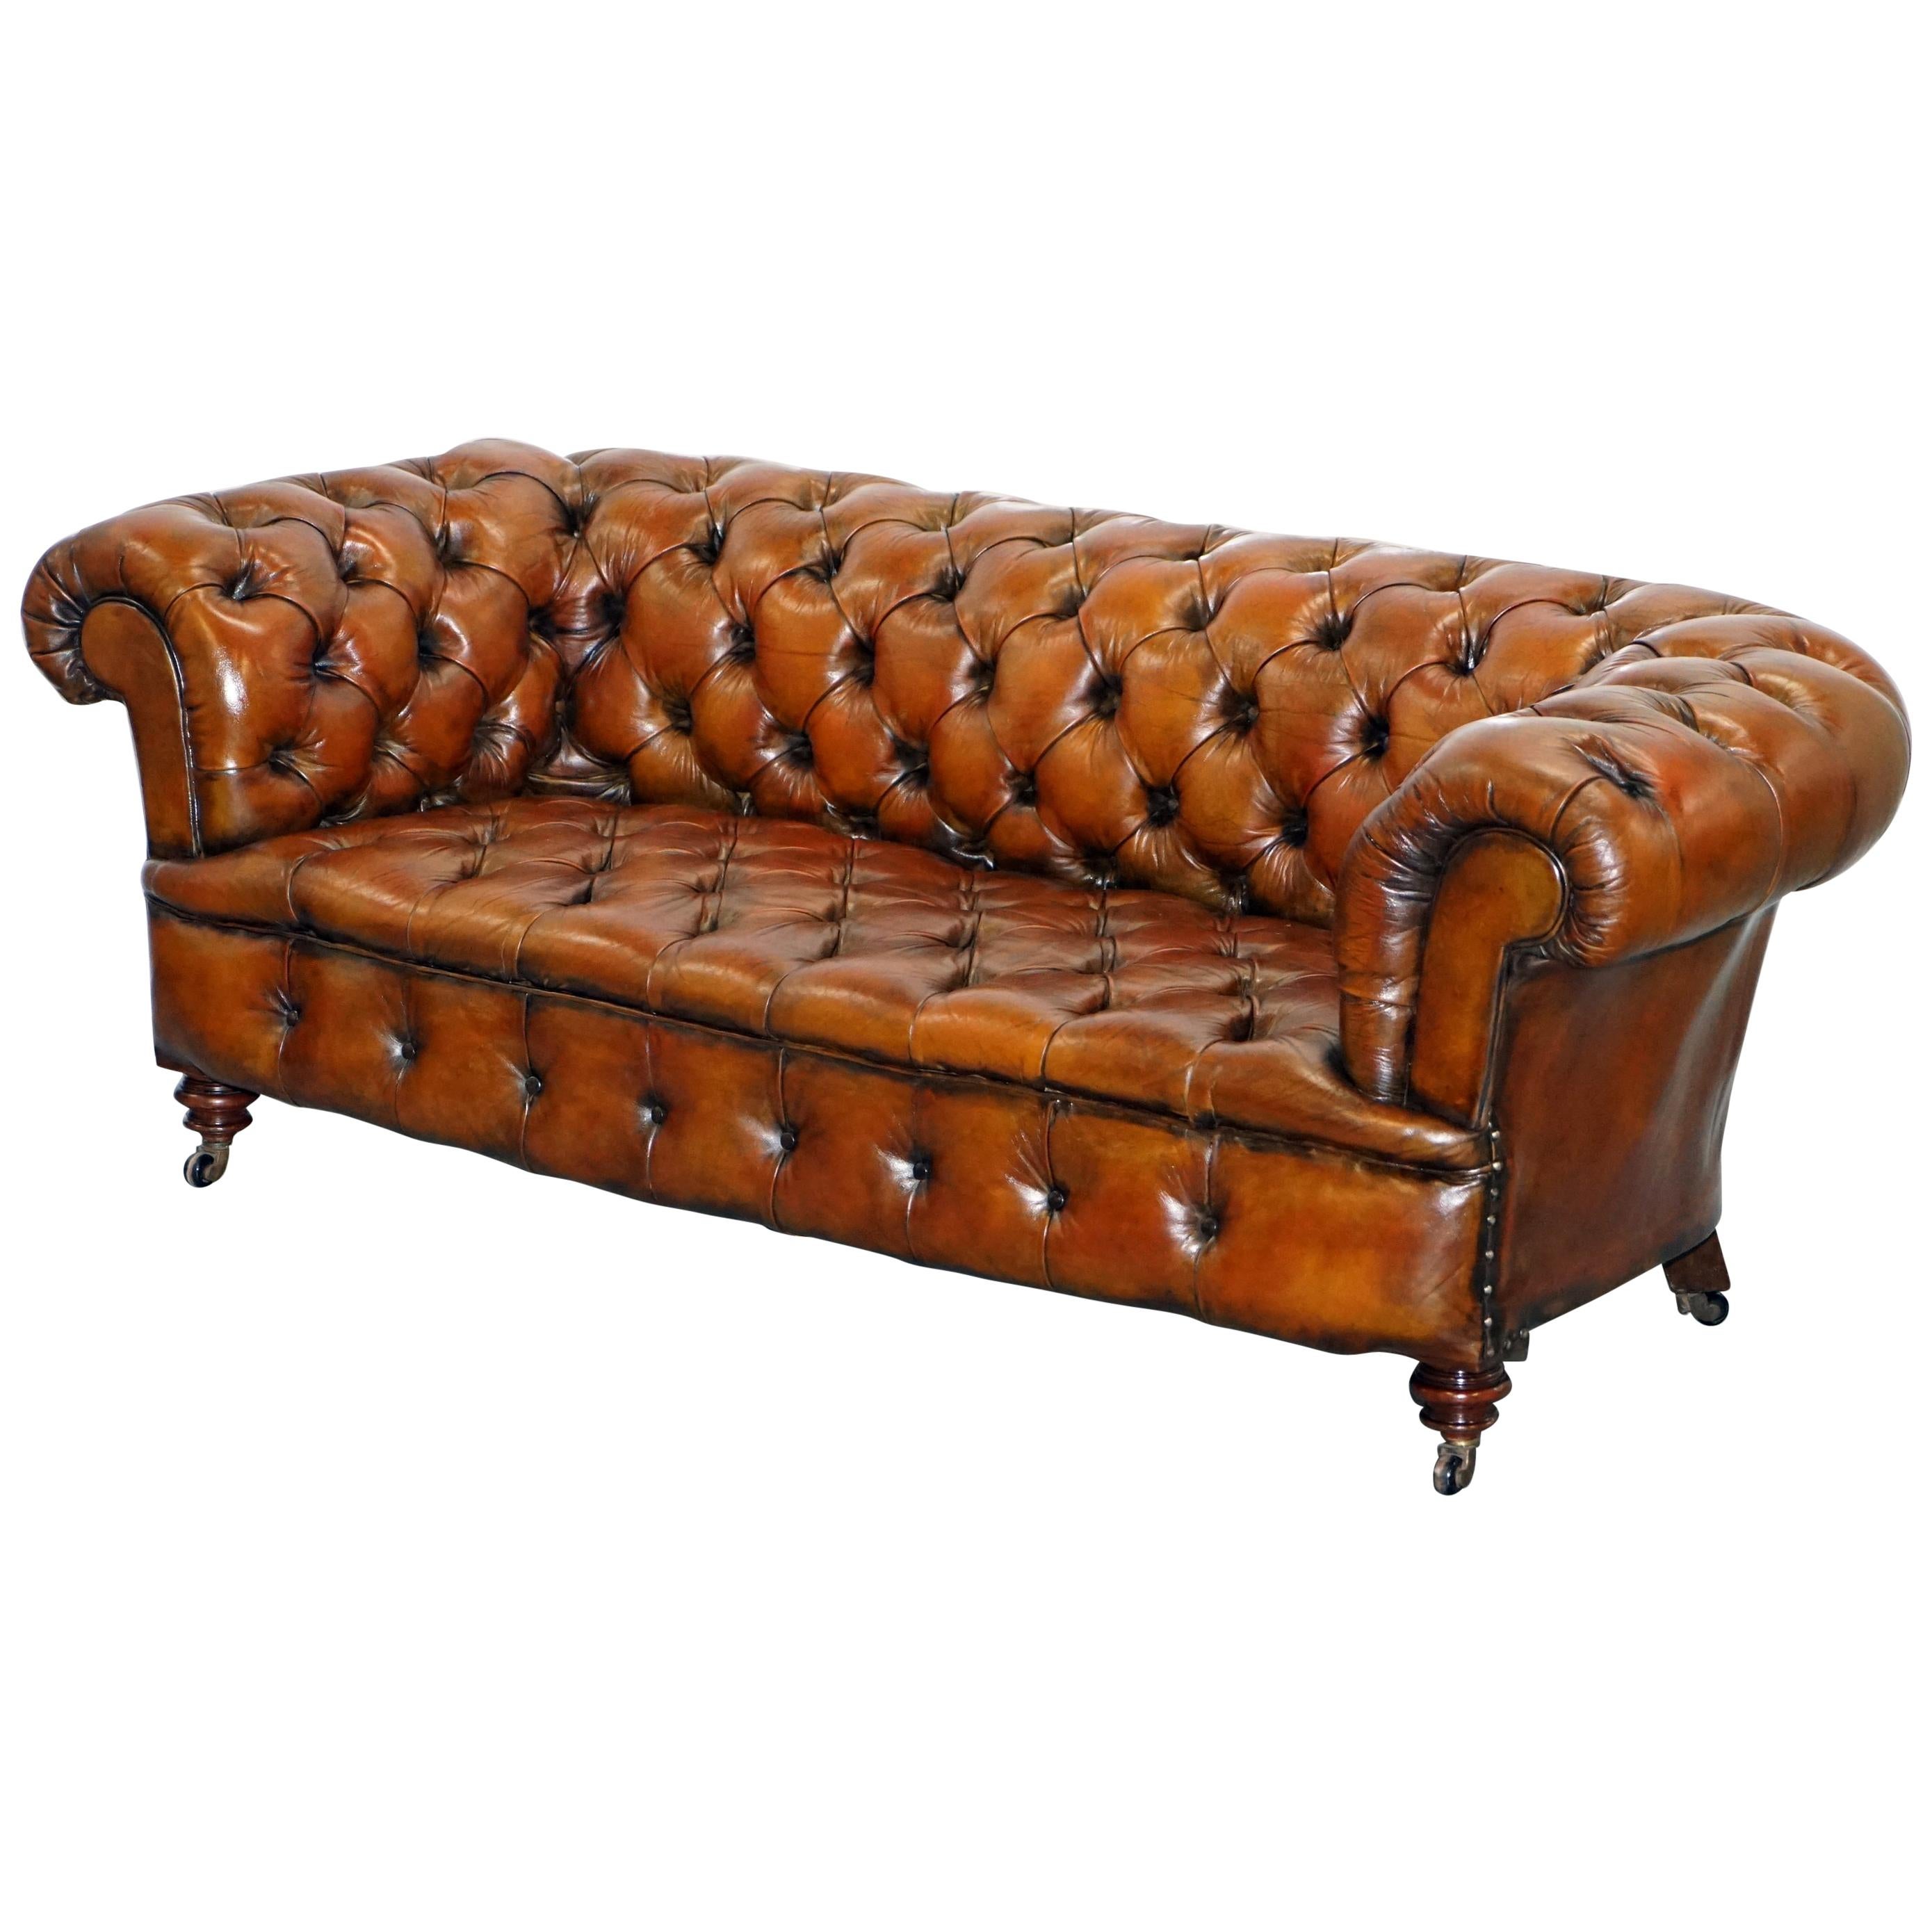 Canapé en cuir marron restauré de style victorien 1890 Cornelius V. Smith Stamp Chesterfield